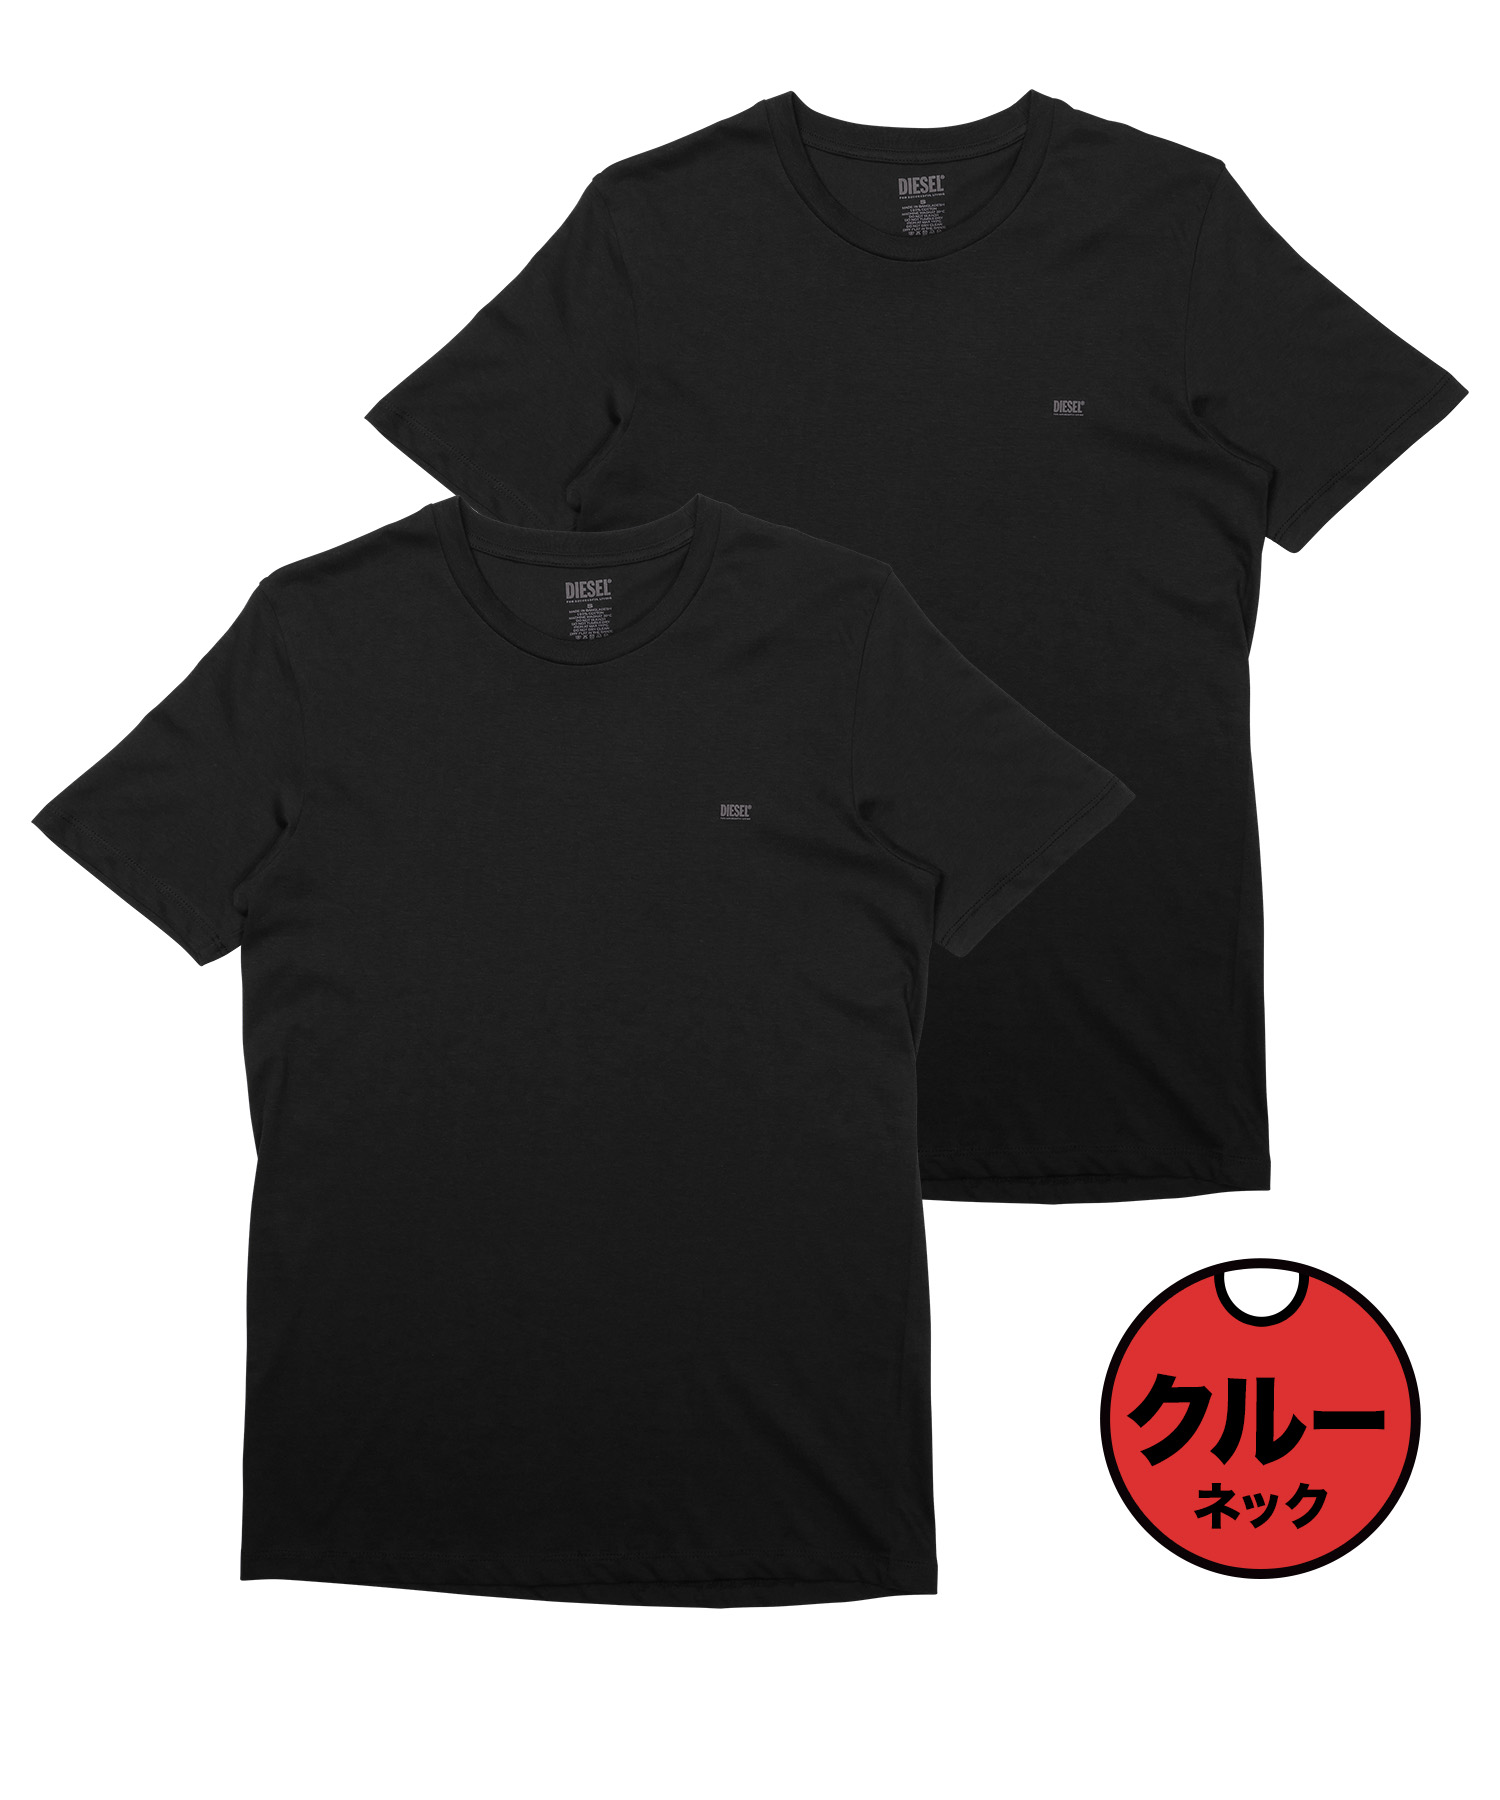 ディーゼル DIESEL Tシャツ 2枚セット メンズ 半袖 クルーネック コットン100% 綿 レディース ユニセックス ブランド ロゴ プレゼント  ギフト